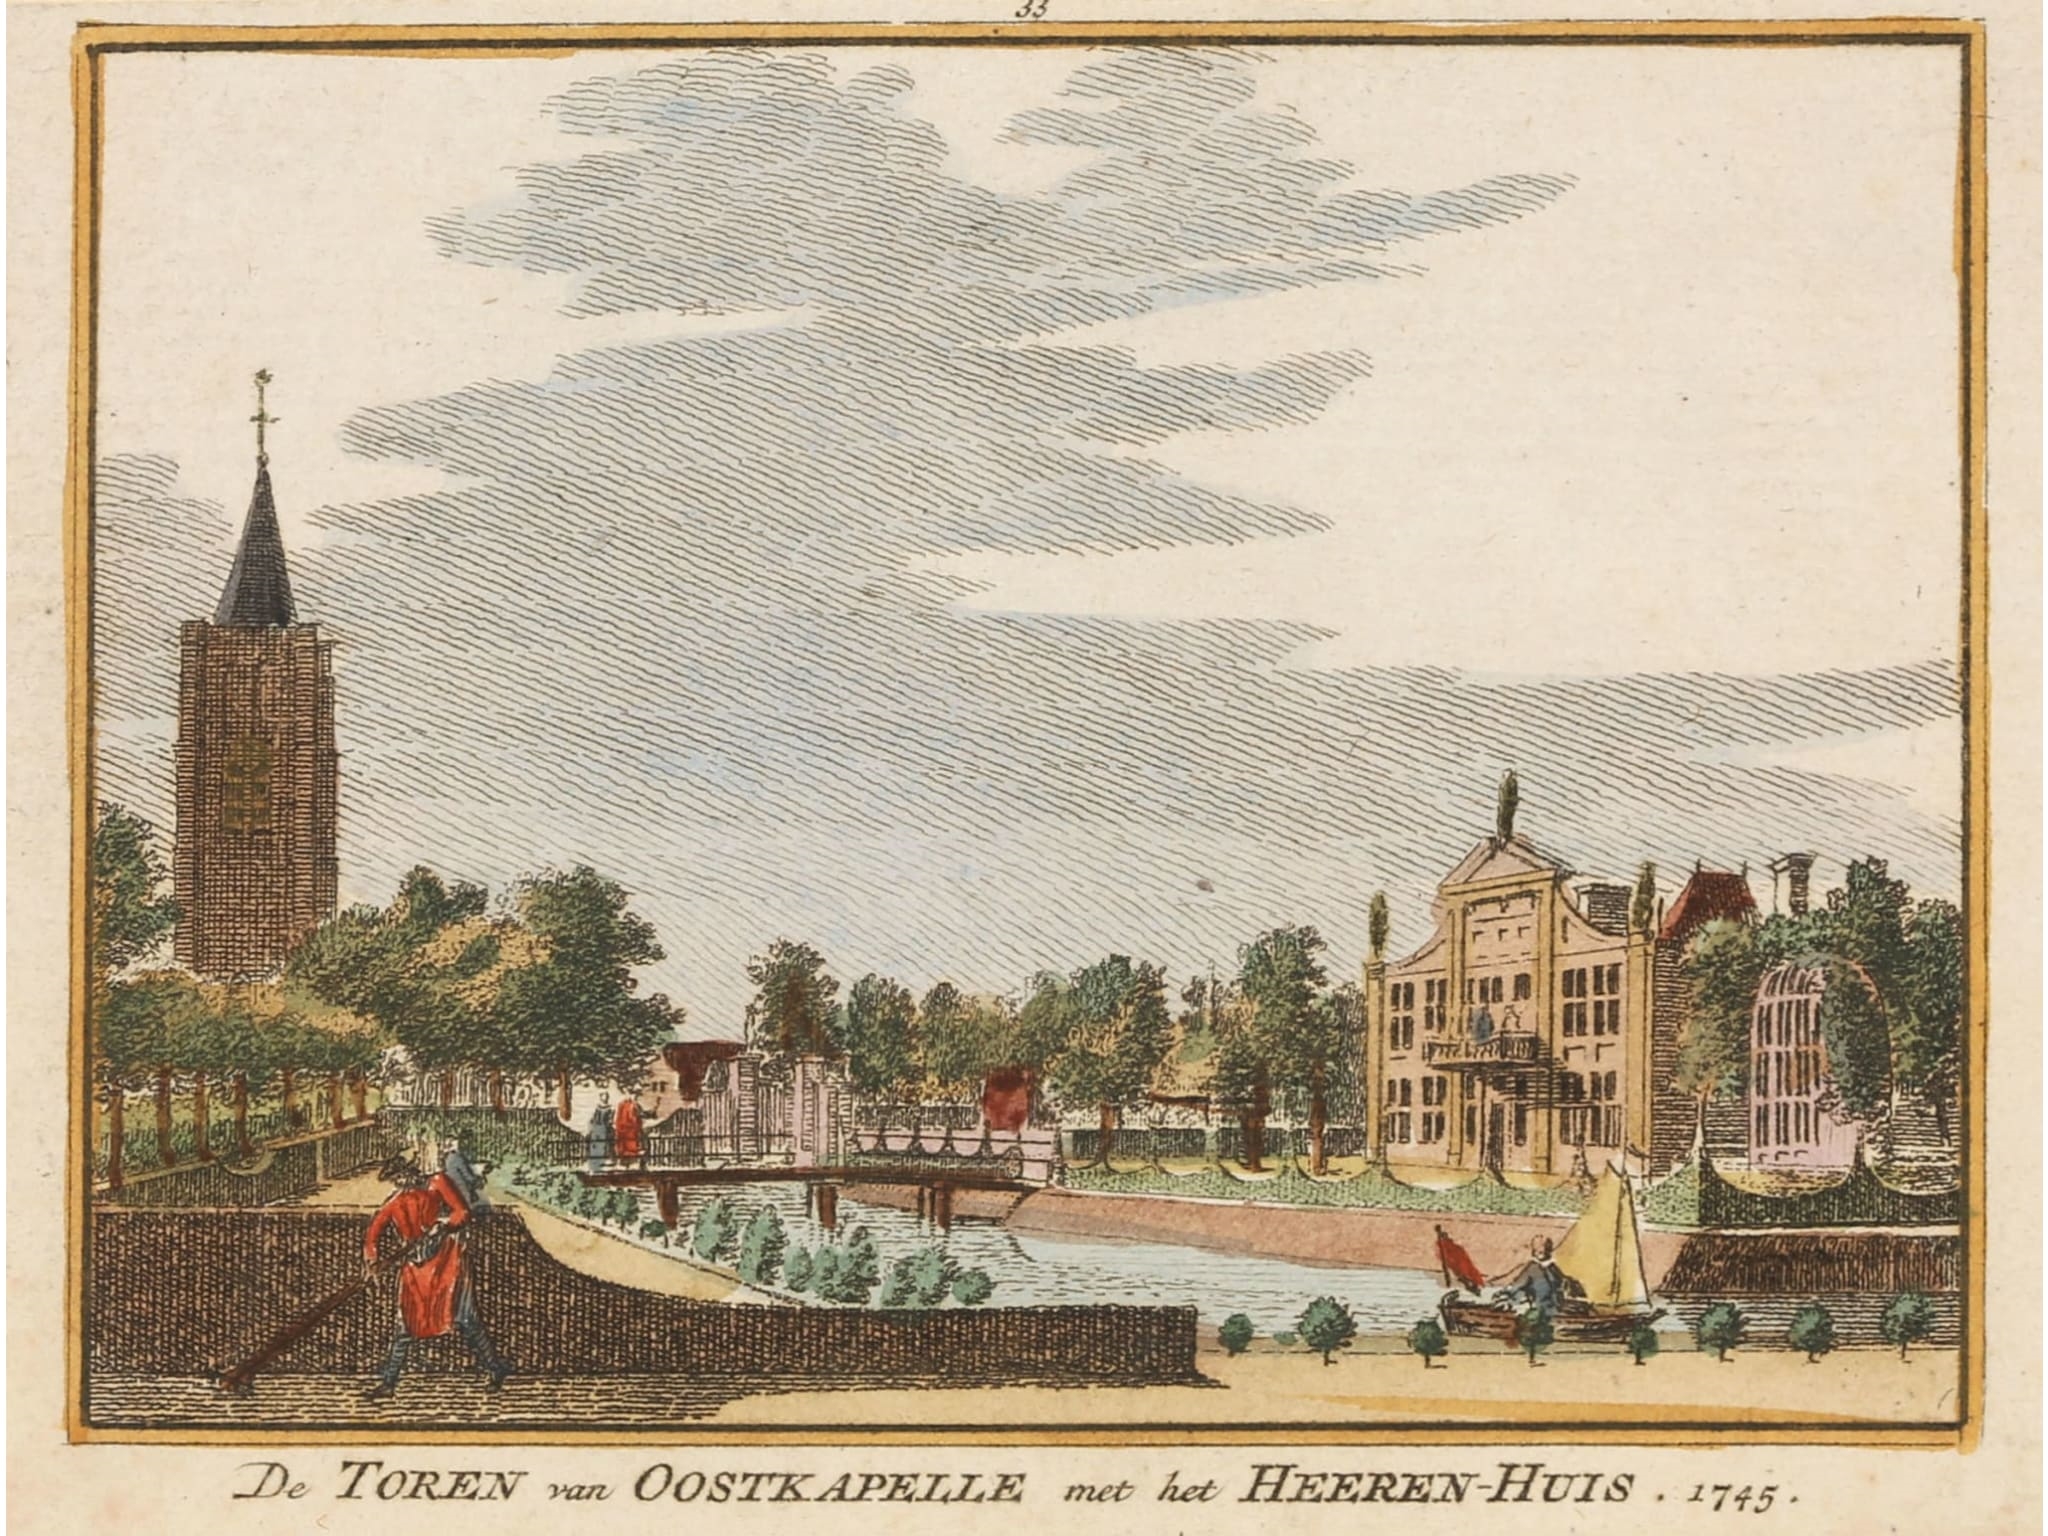 De Toren van Oostkapelle met het Heeren-Huis. by Cornelis Pronk, Hendricus Spilman, 1745